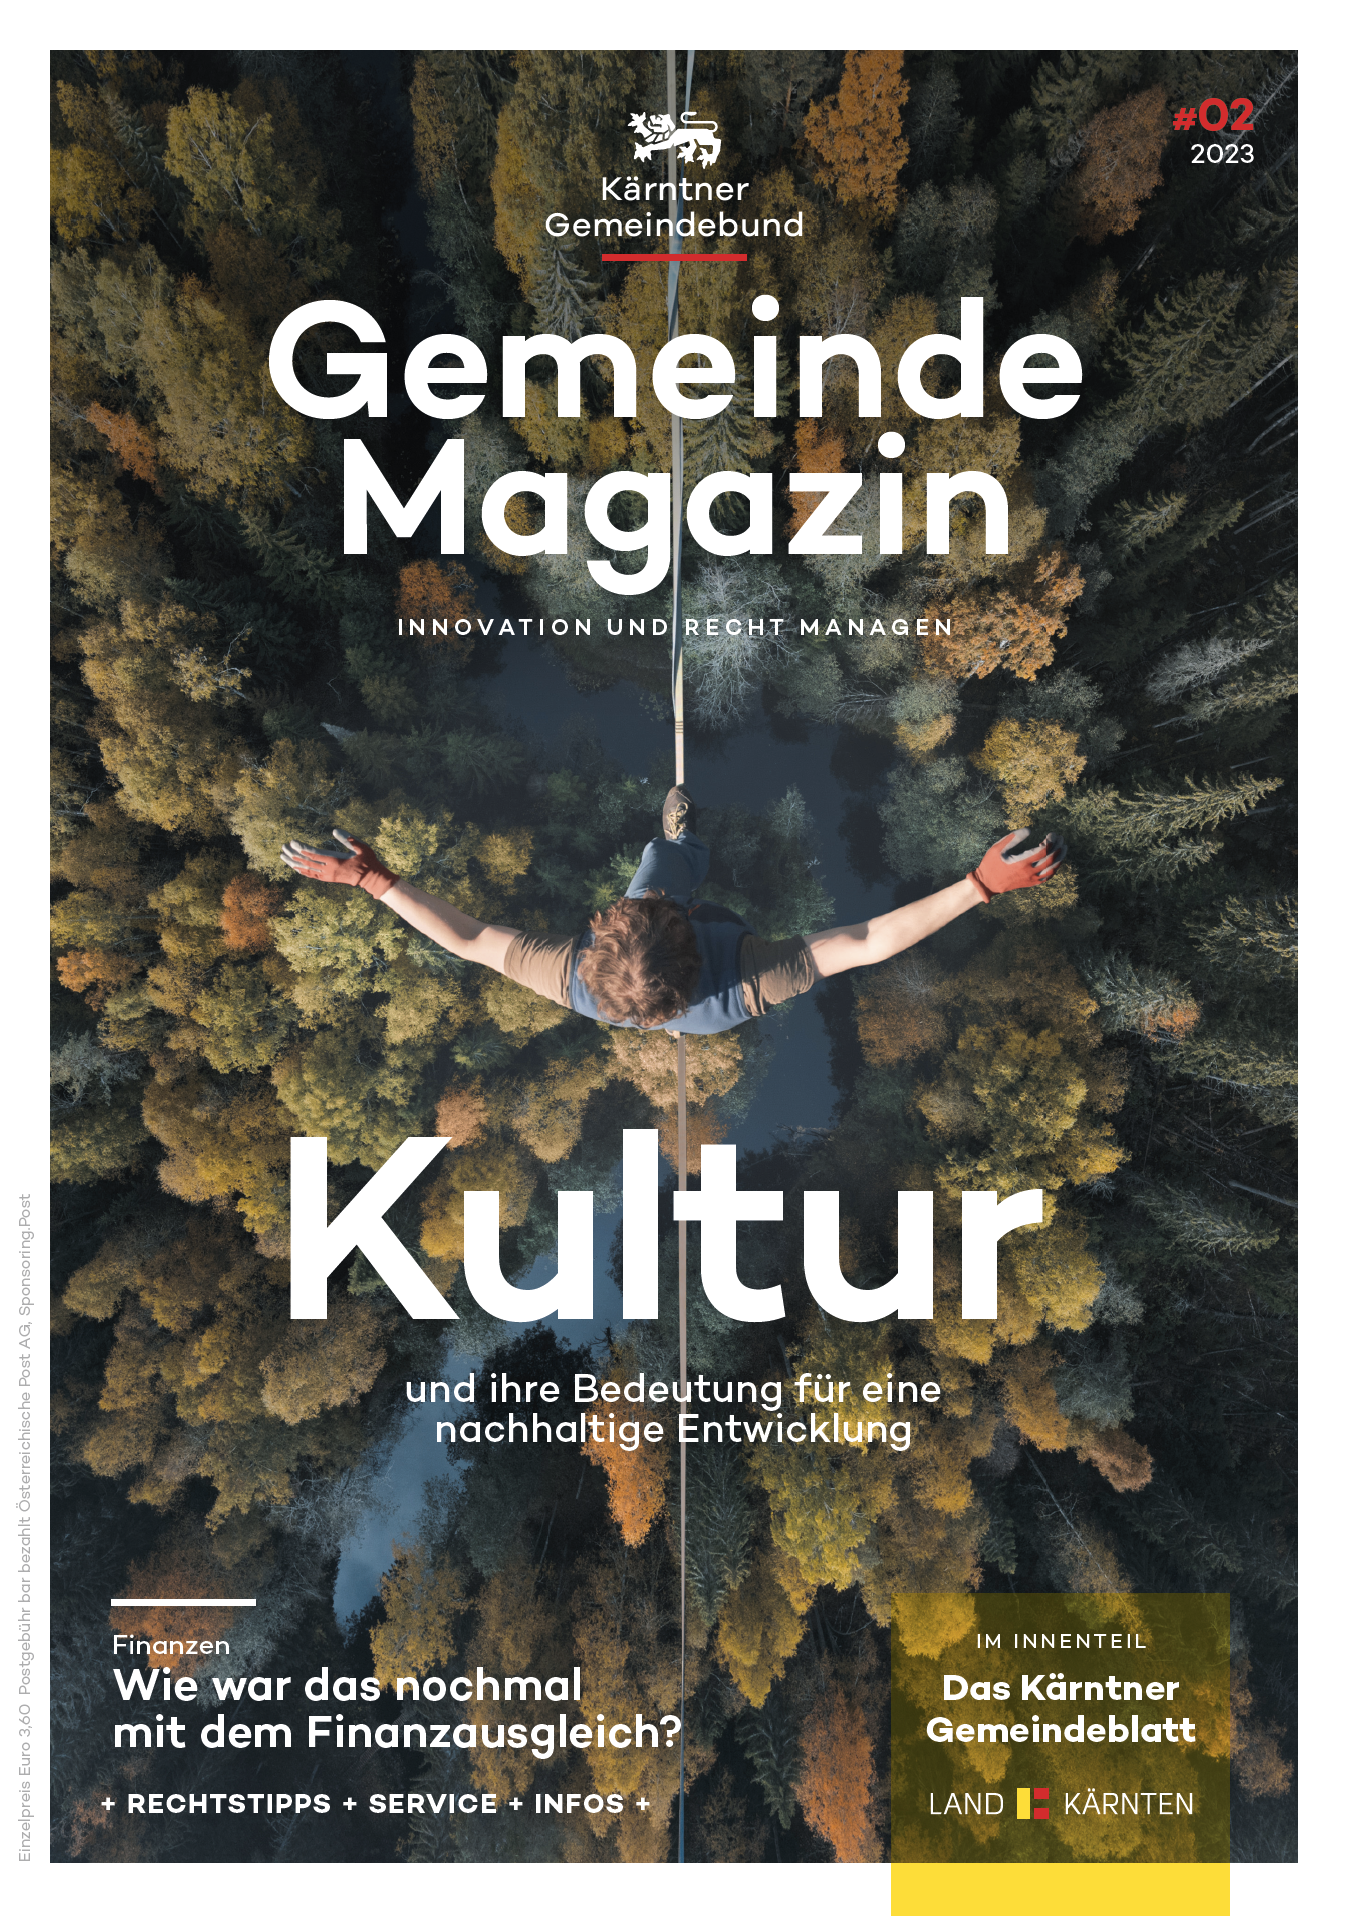 Kärntner Gemeindebund Gemeindemagazin Ausgabe 02 von 2023 zum Thema Kultur und ihre Bedeutung für eine nachhaltige Entwicklung